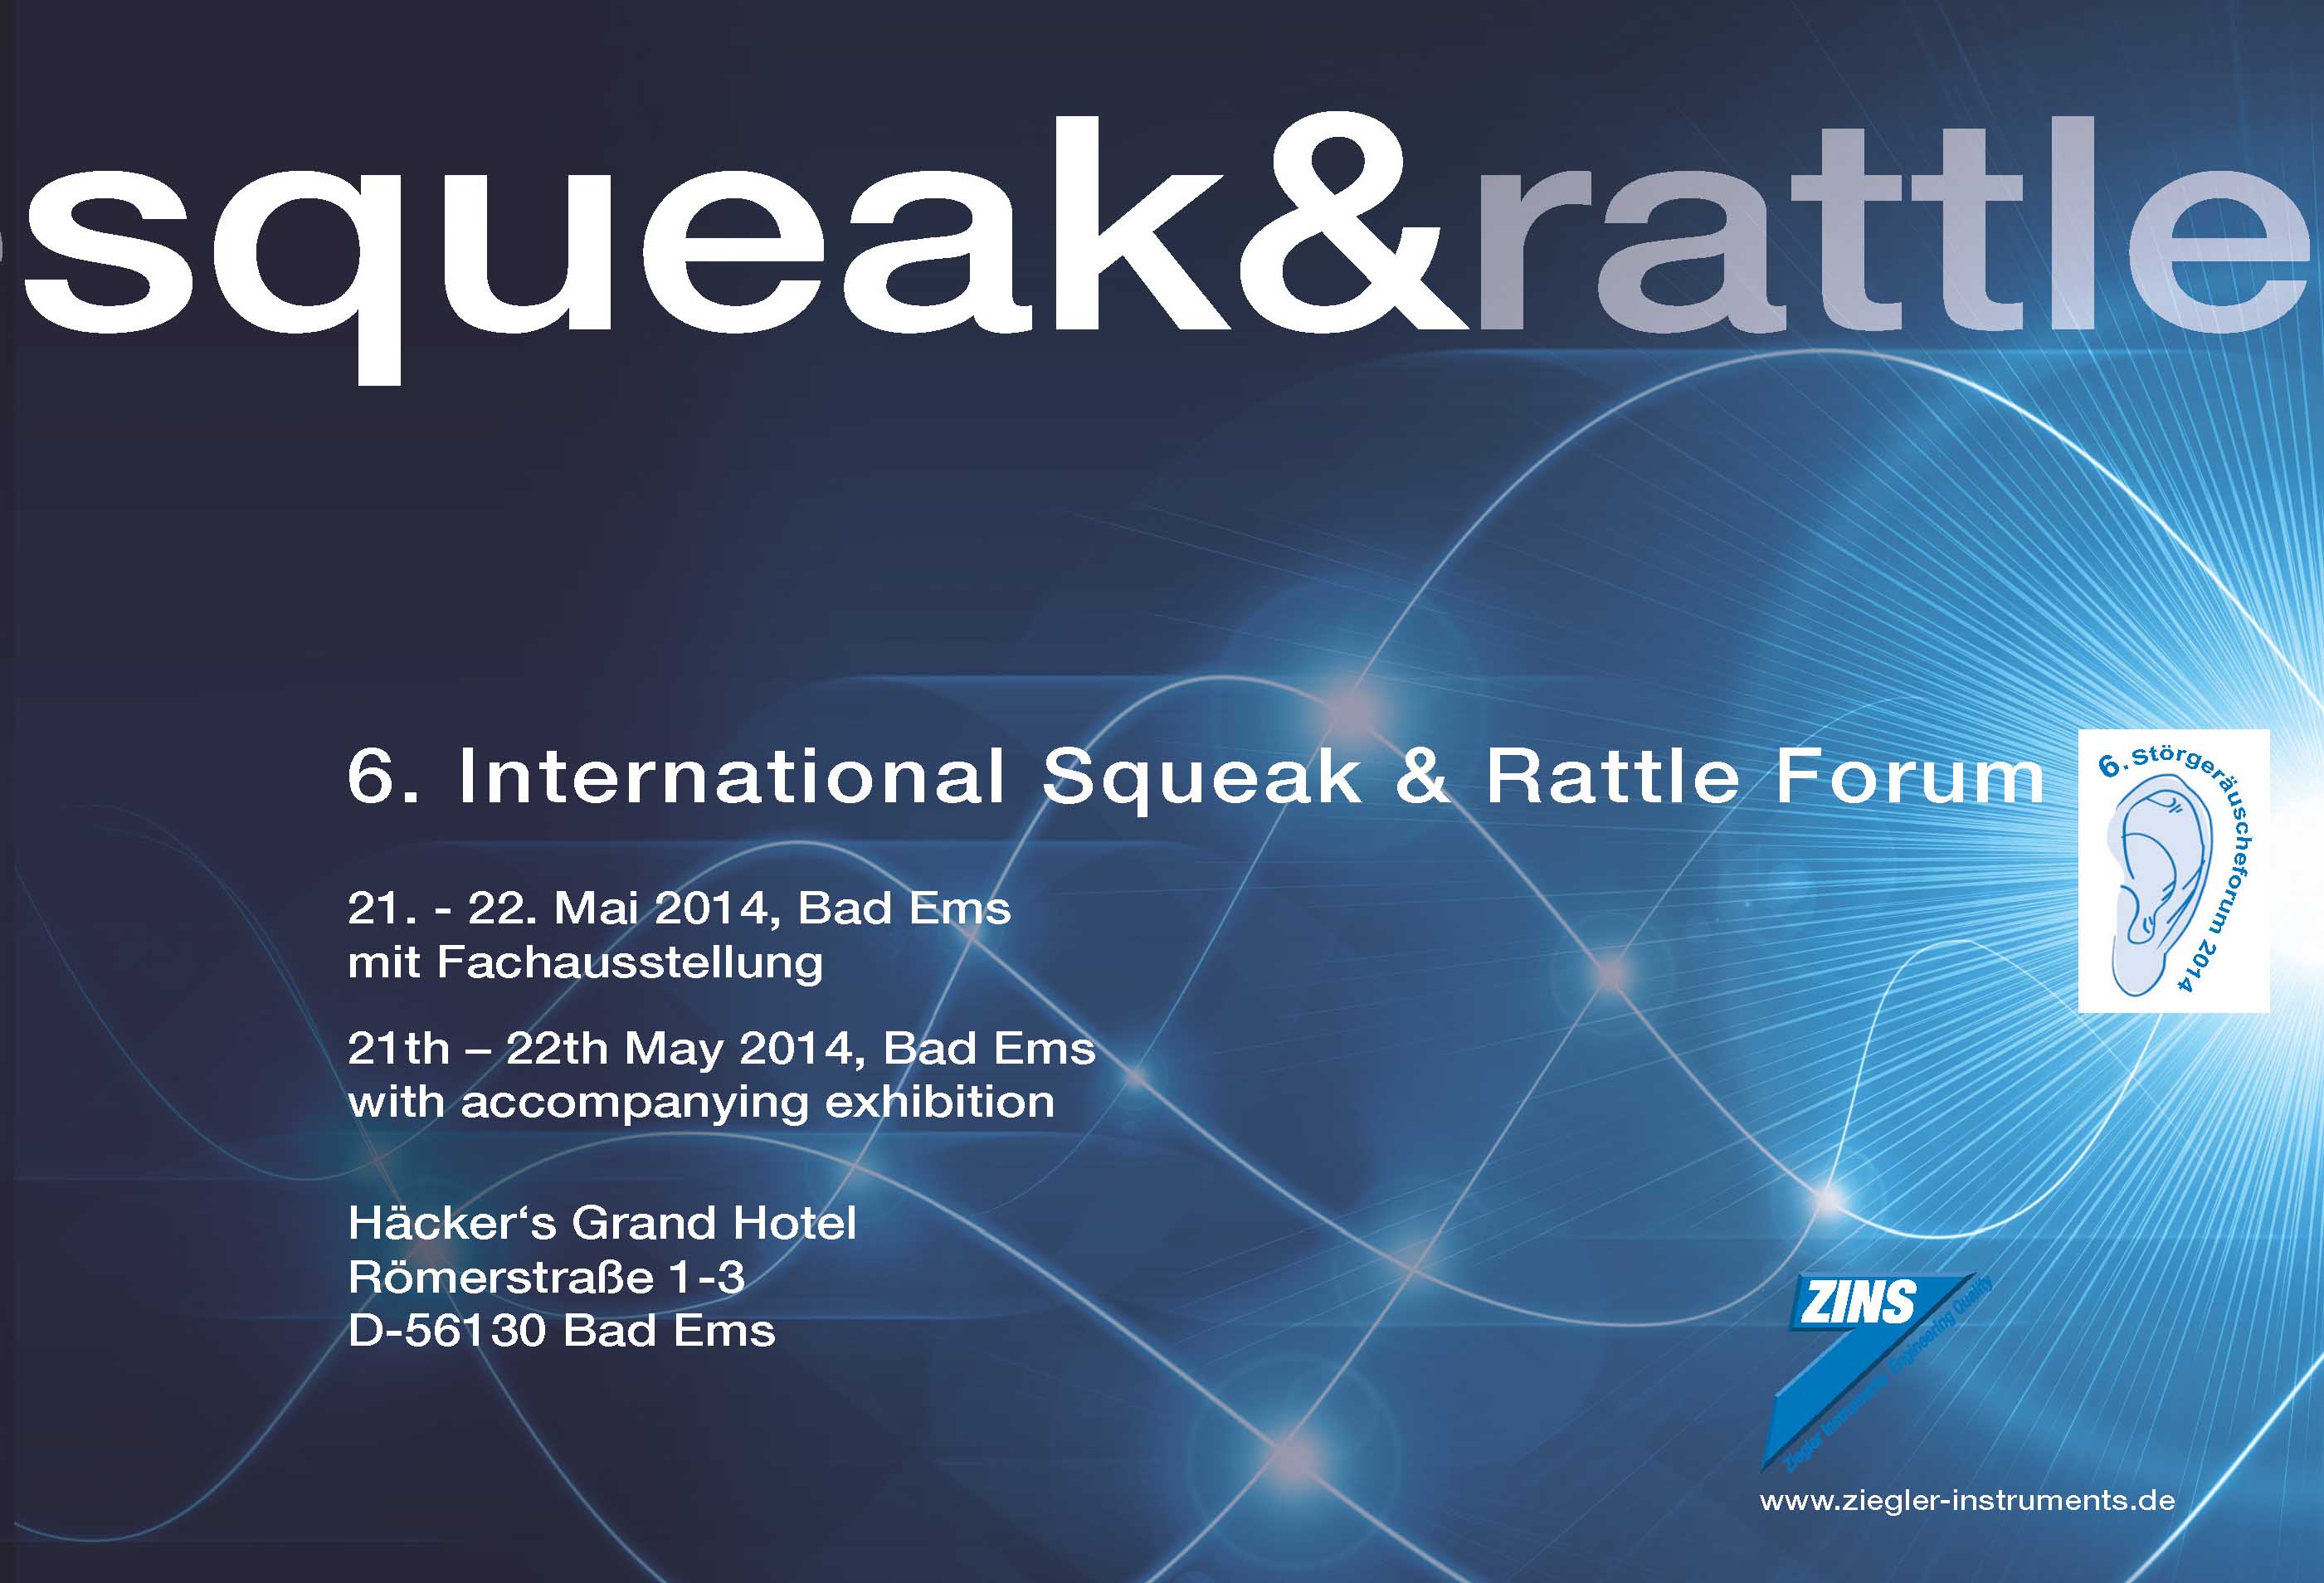 Pro Einladungsflyer Squeak&Rattle Forum 06.02.14 Seite 1